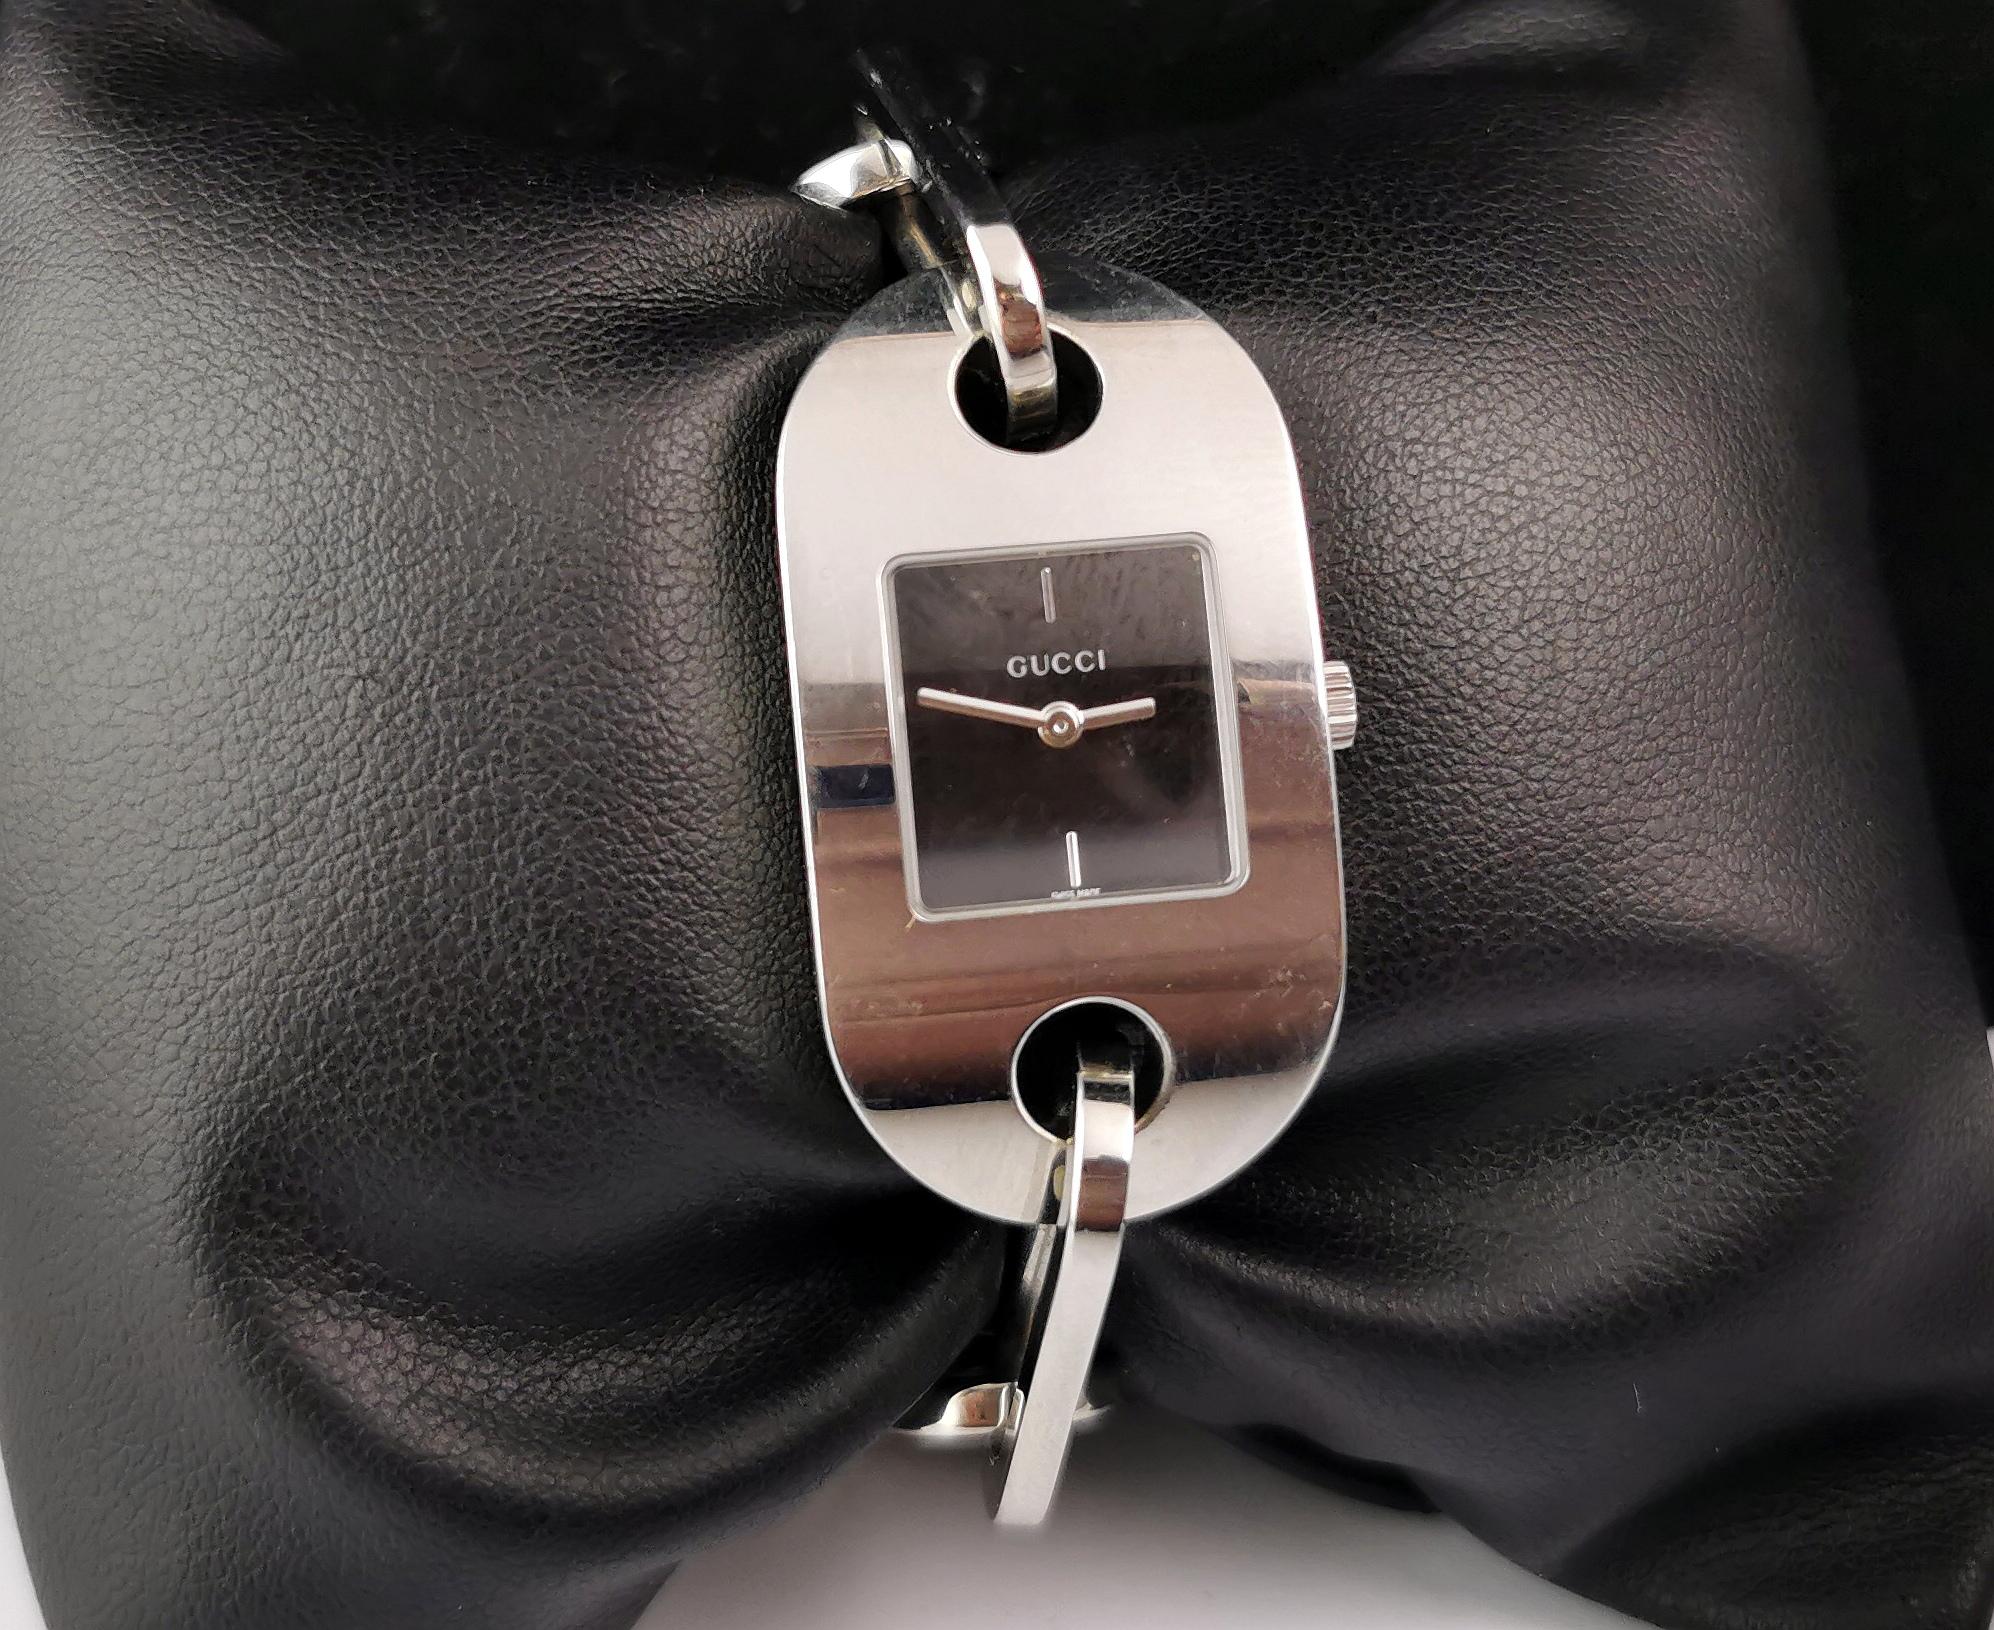 Une élégante montre Gucci 6155L en acier inoxydable.

Il s'agit d'une montre à bracelet avec un beau bracelet en acier inoxydable épais avec un grand maillon de type ovale.

Le boîtier est en acier inoxydable avec un cadran noir, sans chiffres et un